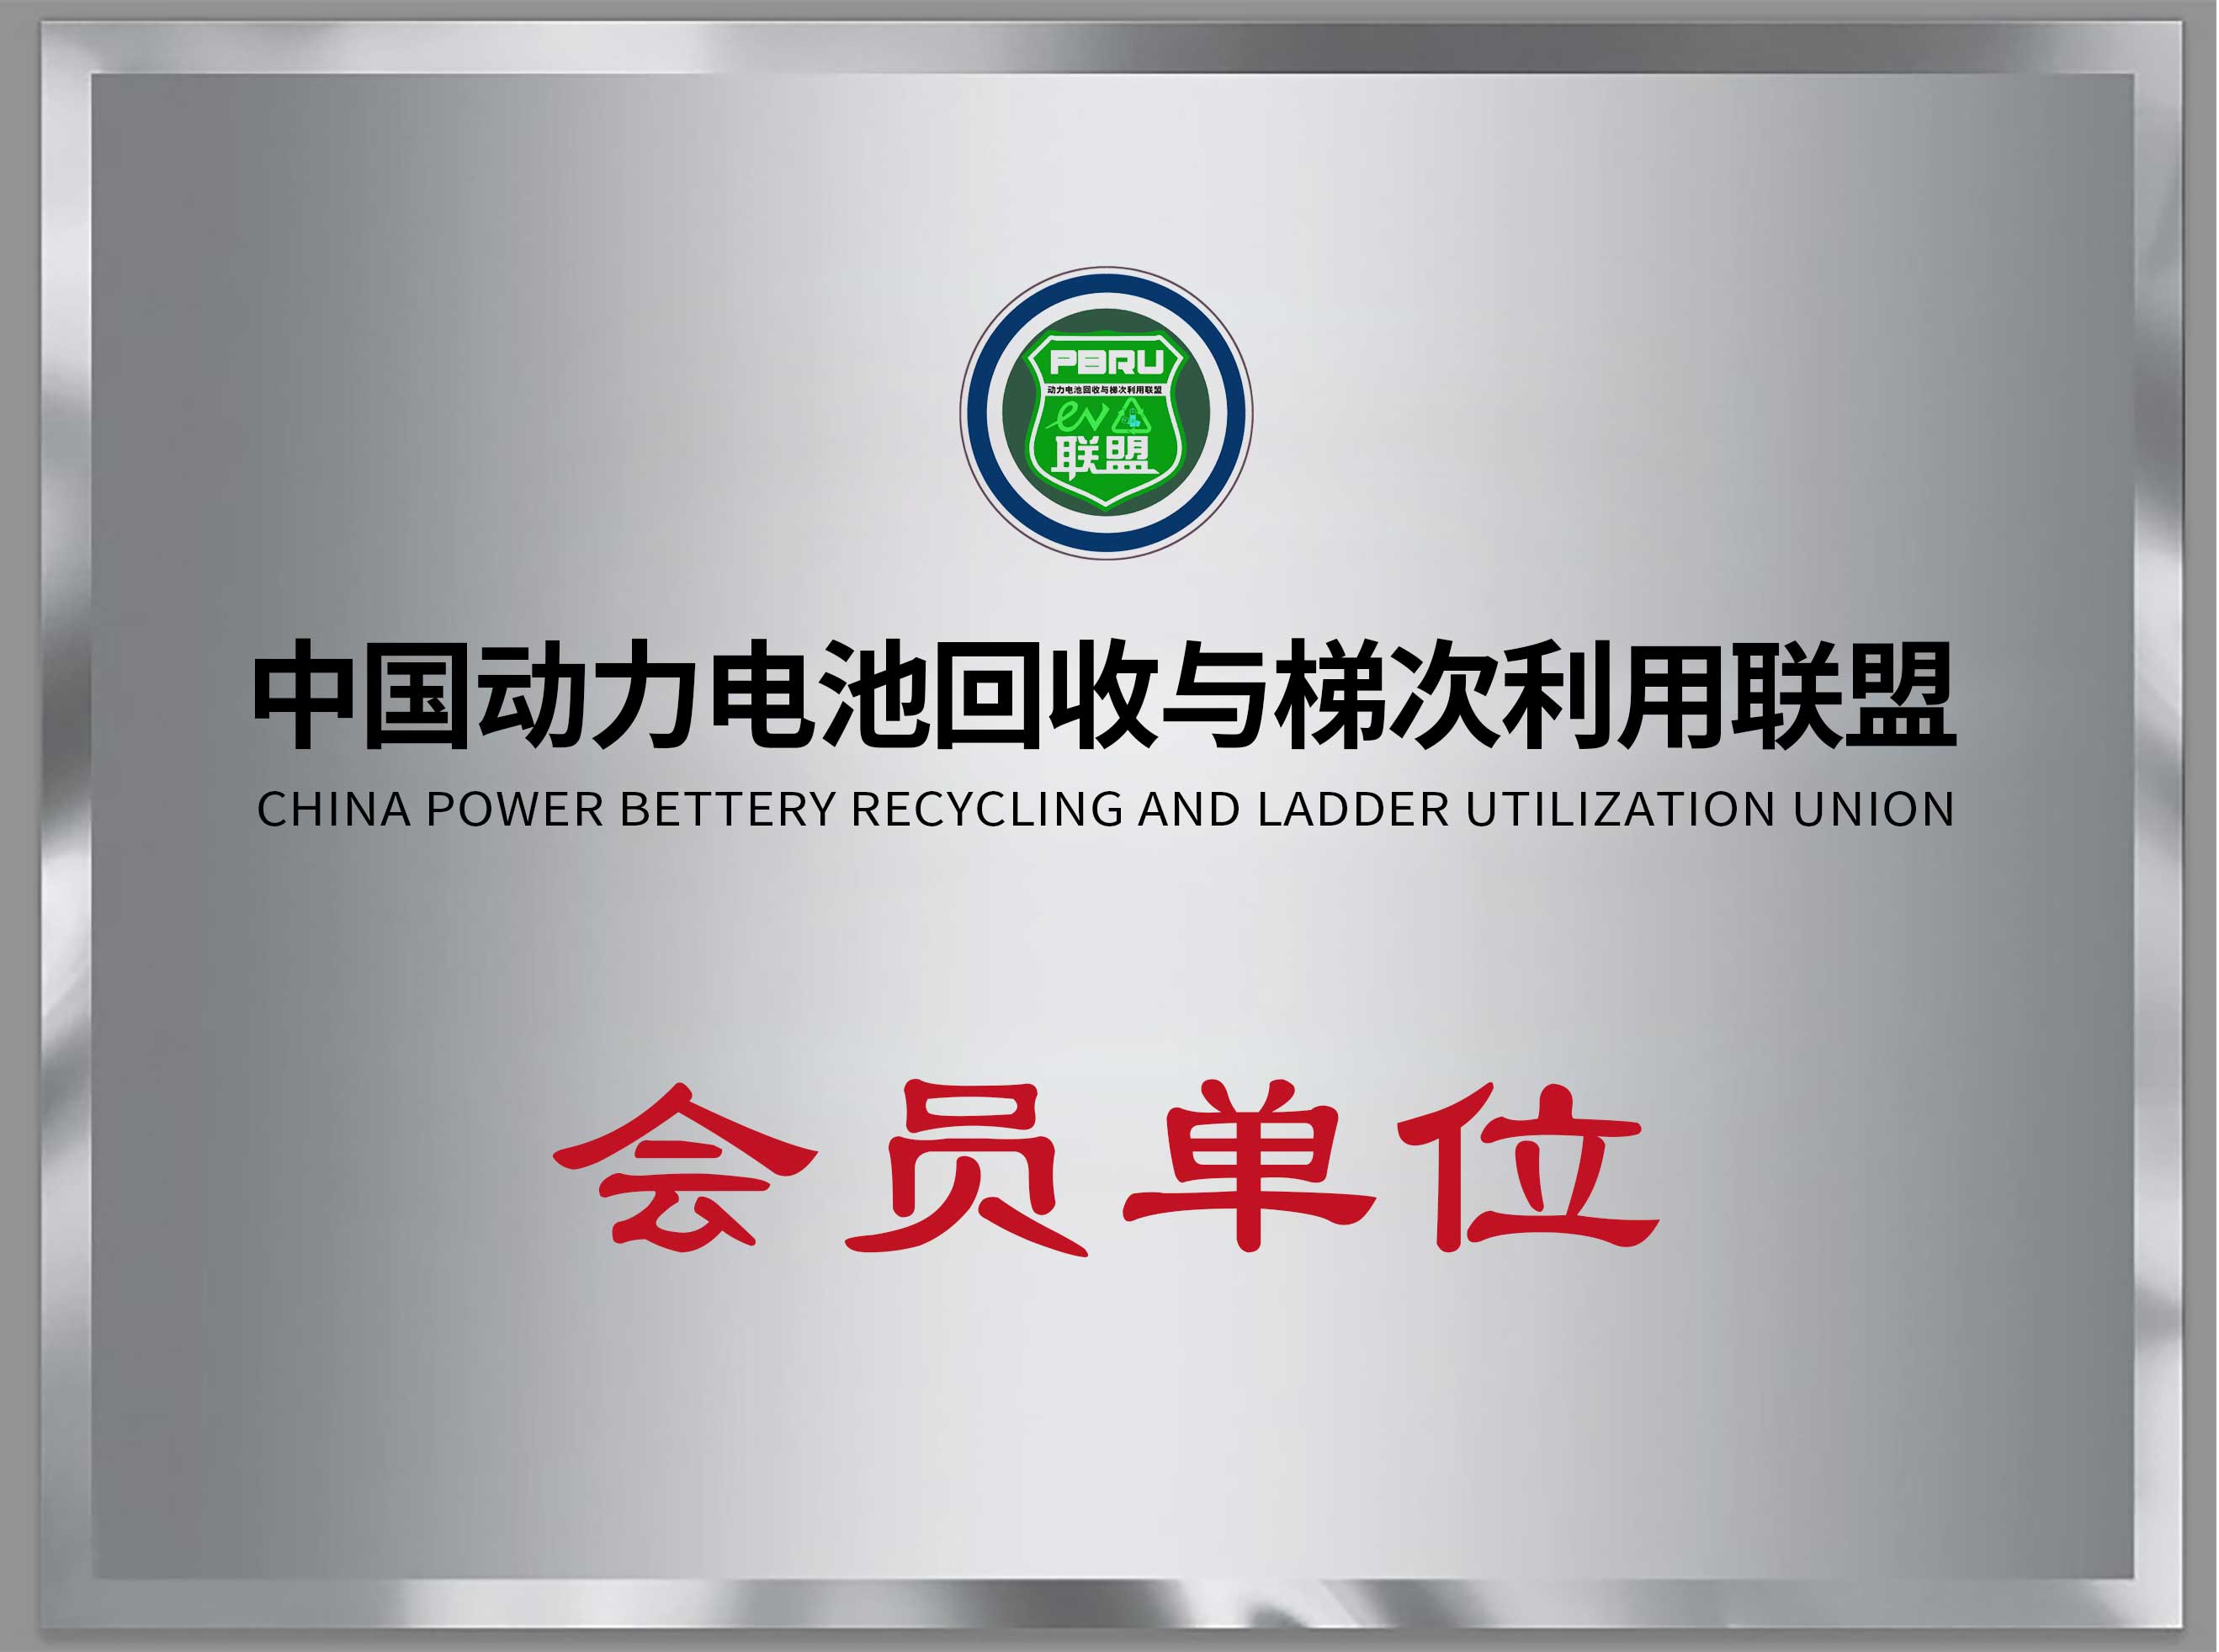 中國動力電池回收與梯次利用聯盟會員單位